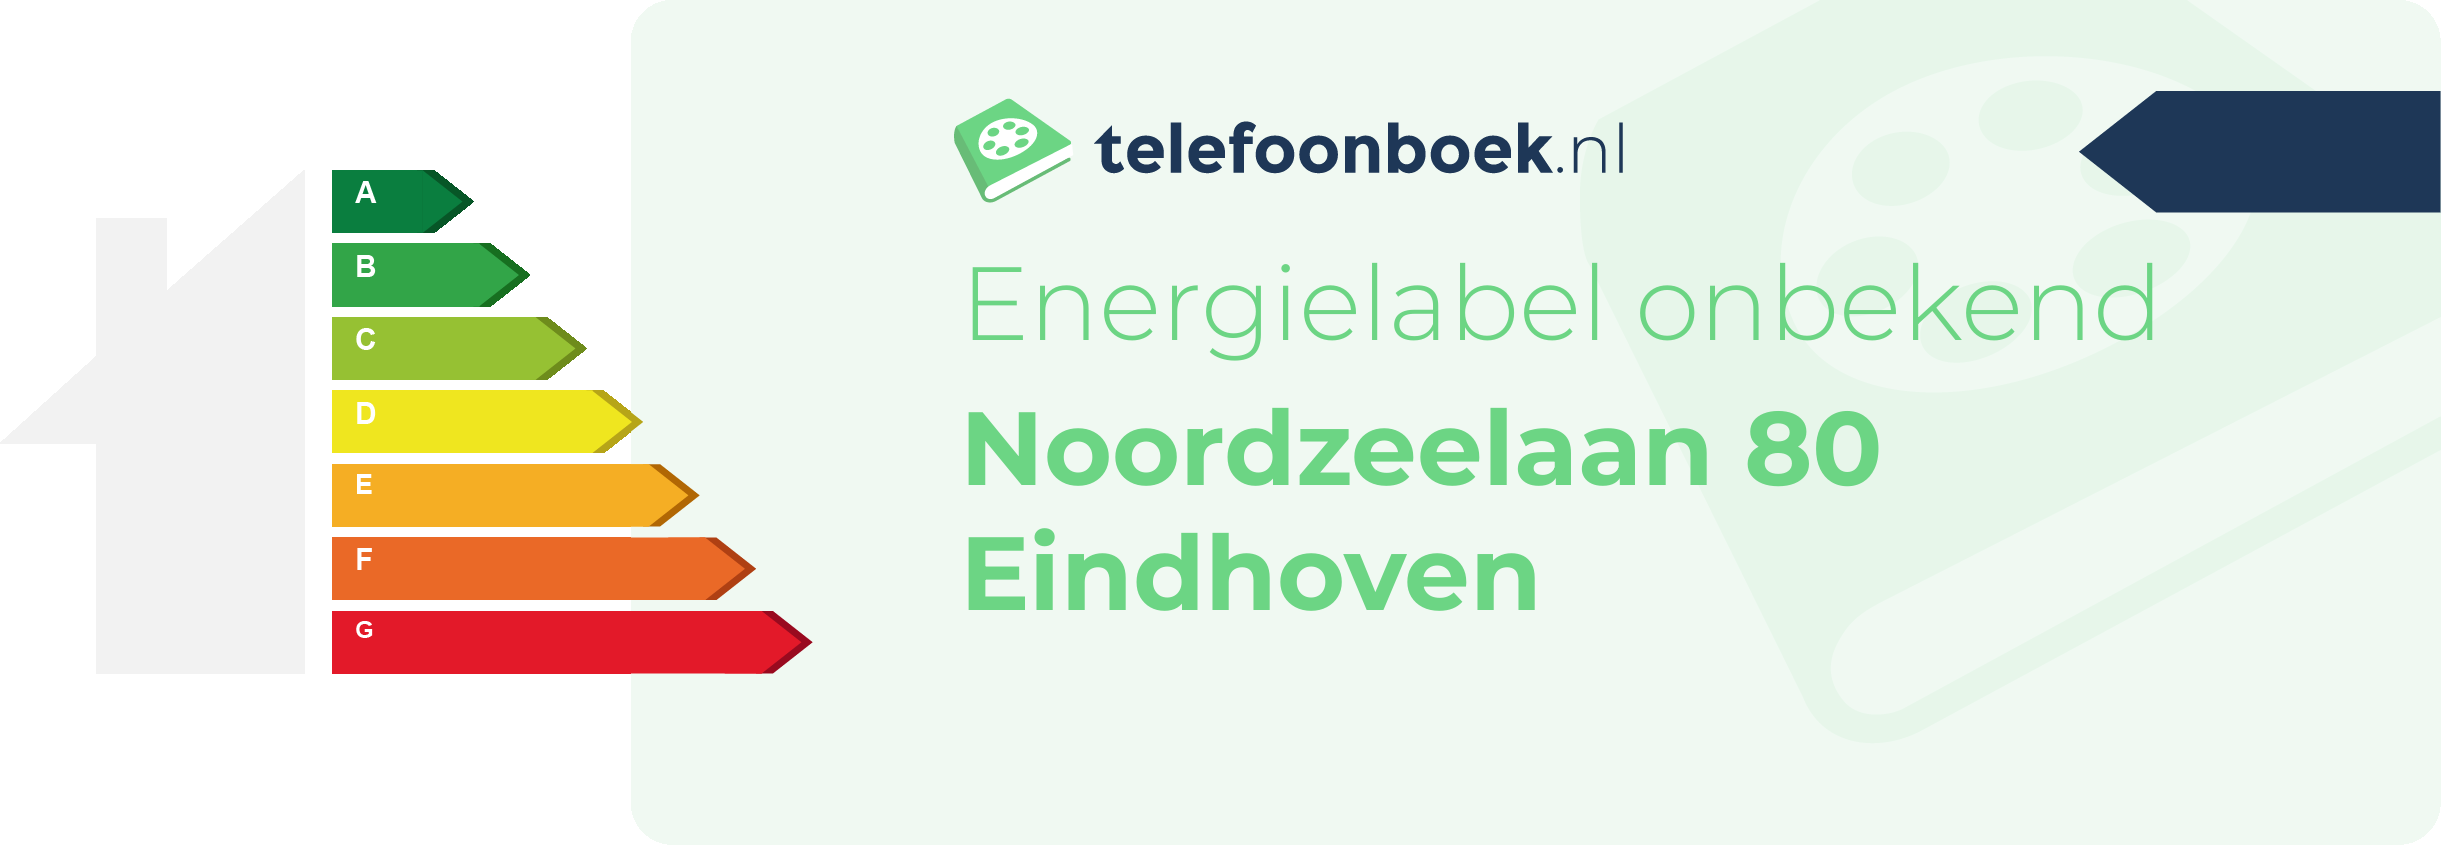 Energielabel Noordzeelaan 80 Eindhoven